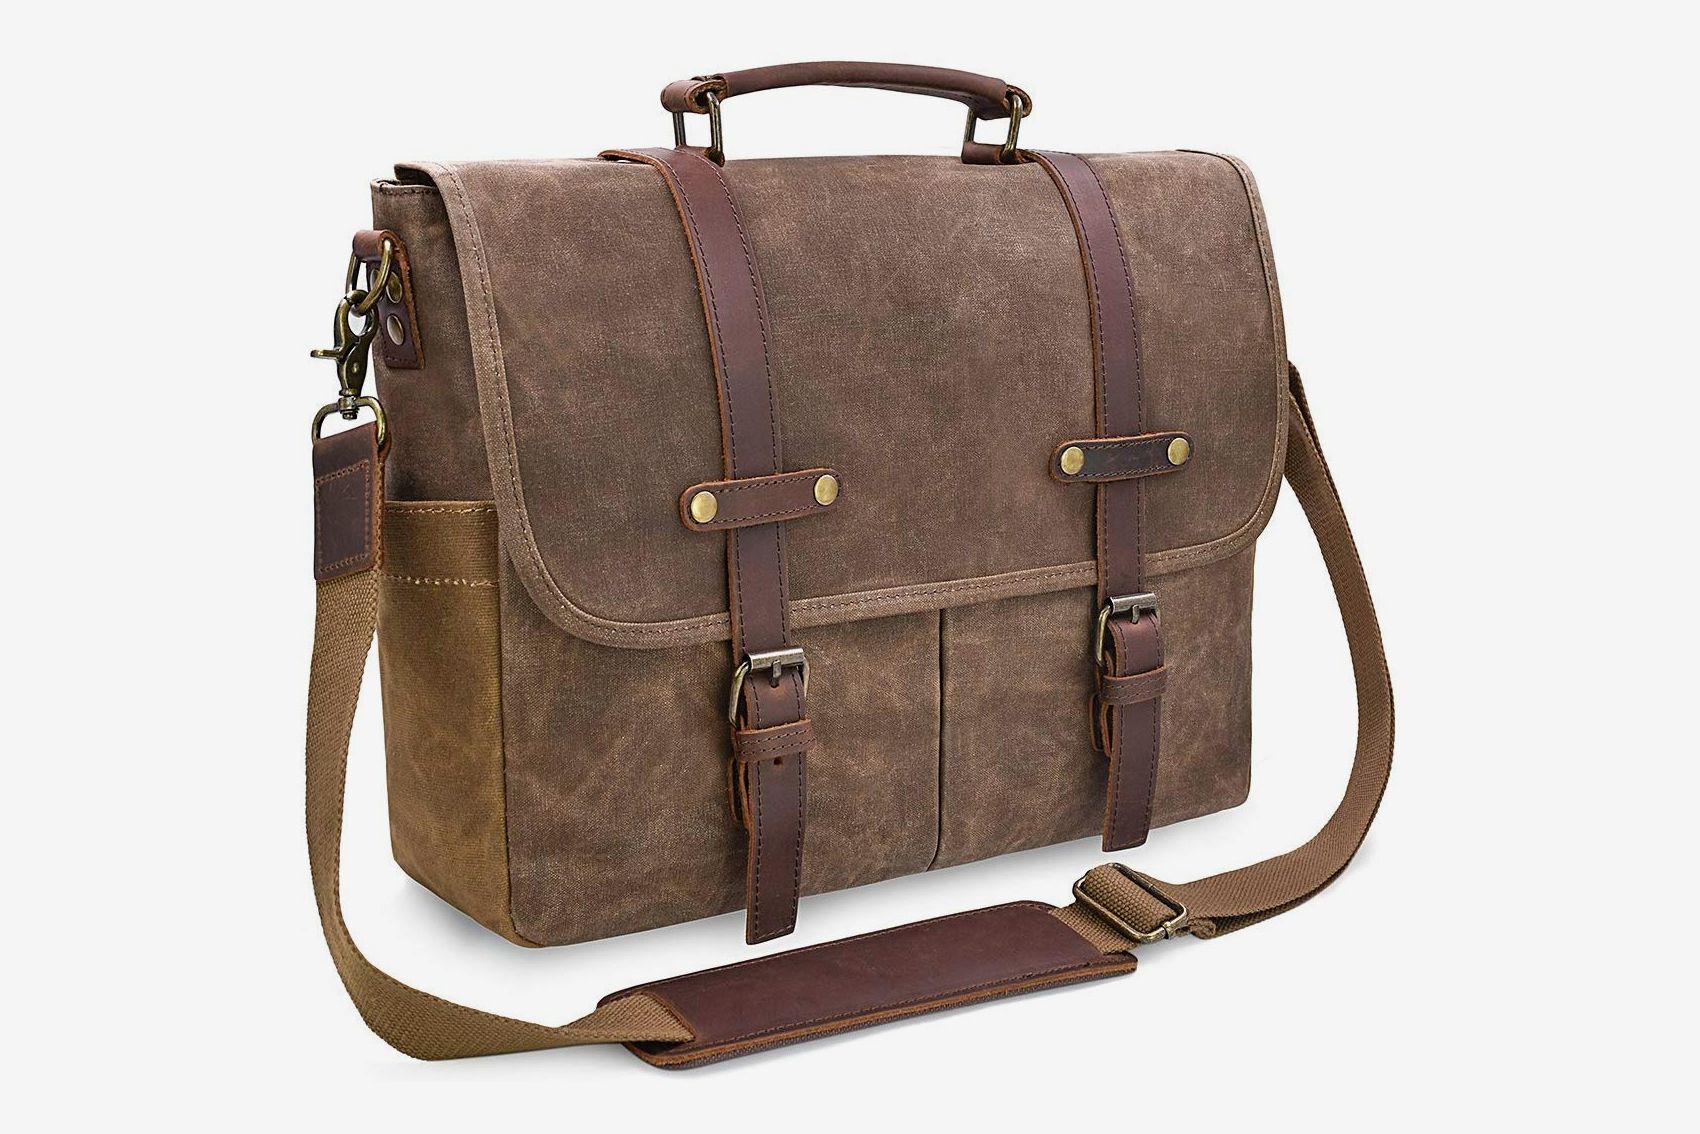 Men's Leather Handbag Briefcase Messenger Shoulder Bag Casual Travel Laptop Bag 